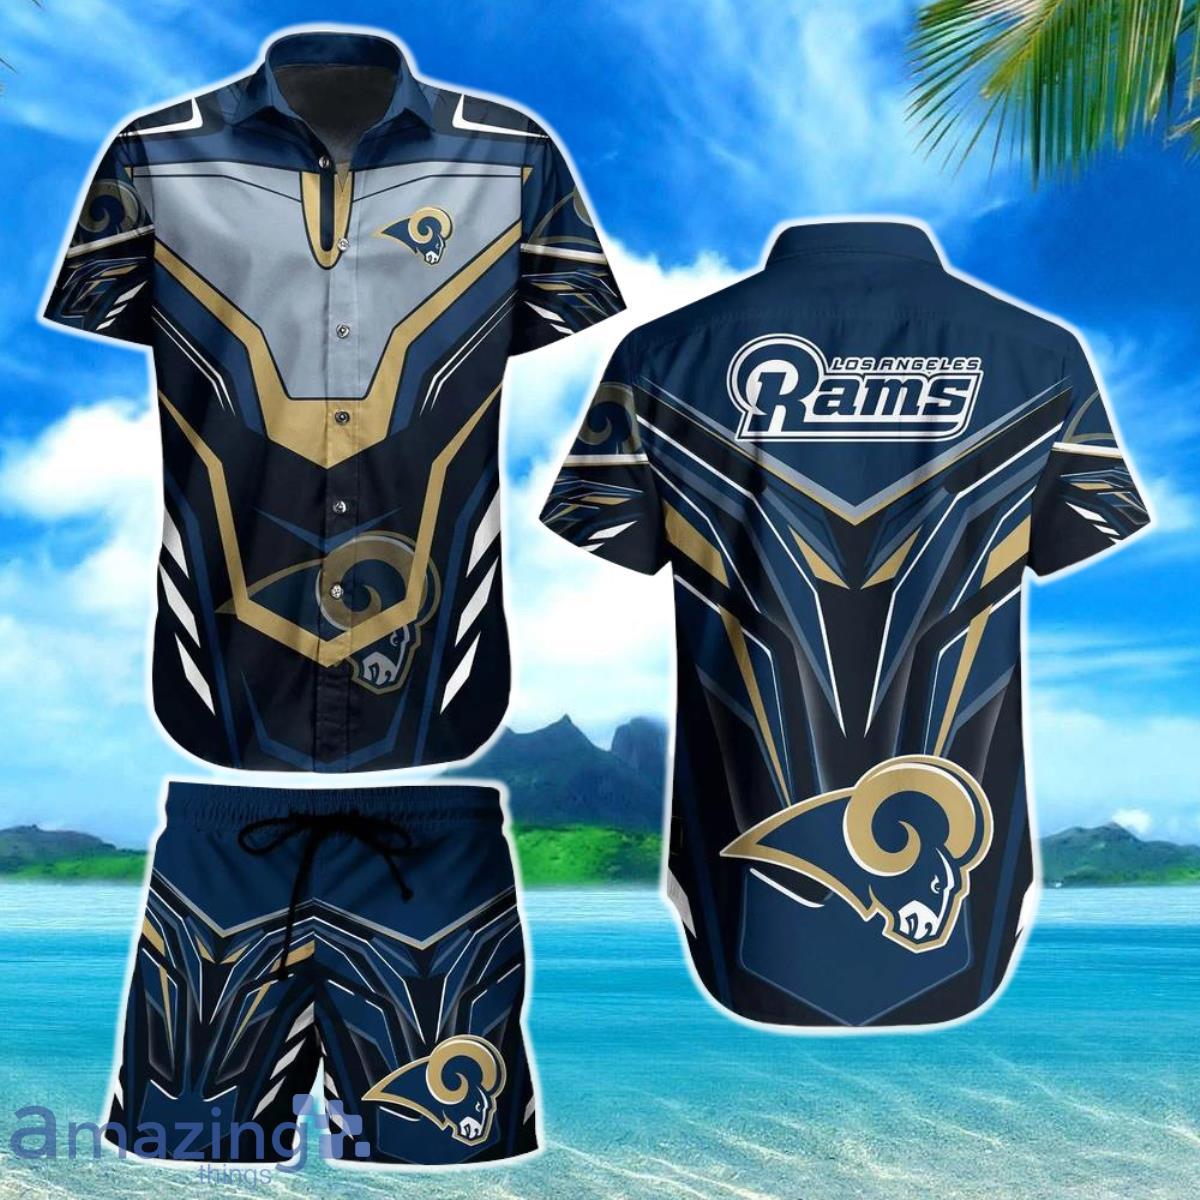 BEST NFL Los Angeles Rams Team Beach Shirt For Sports Rams Fans Hawaiian  Shirt Hot Trend